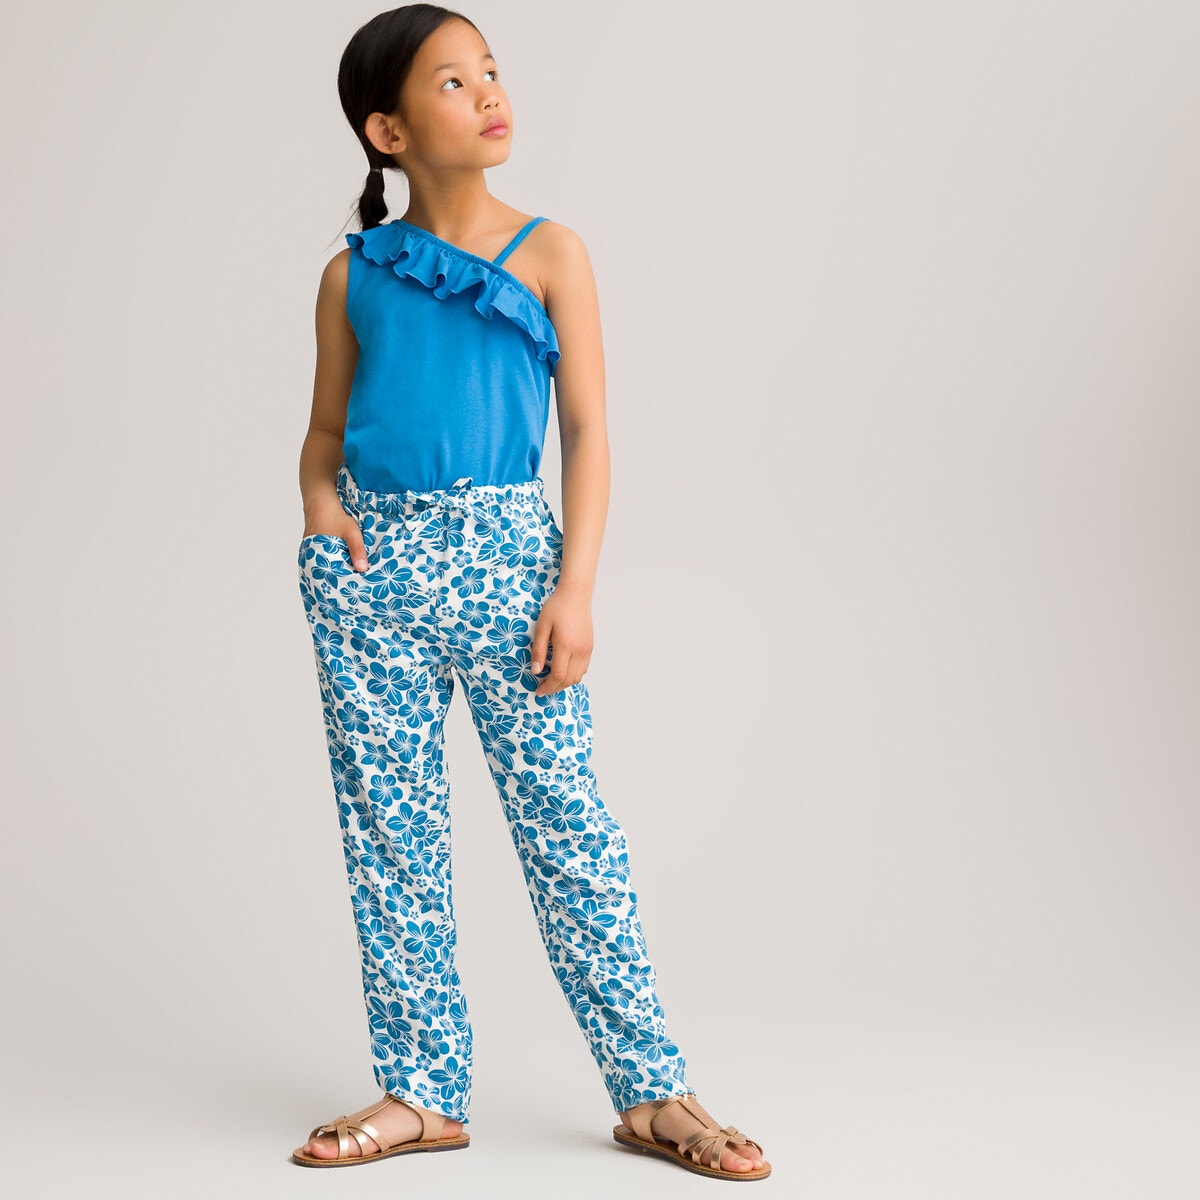 ΠΑΙΔΙ | Παντελόνια Παντελόνι με χαβανέζικο print, 3-12 ετών